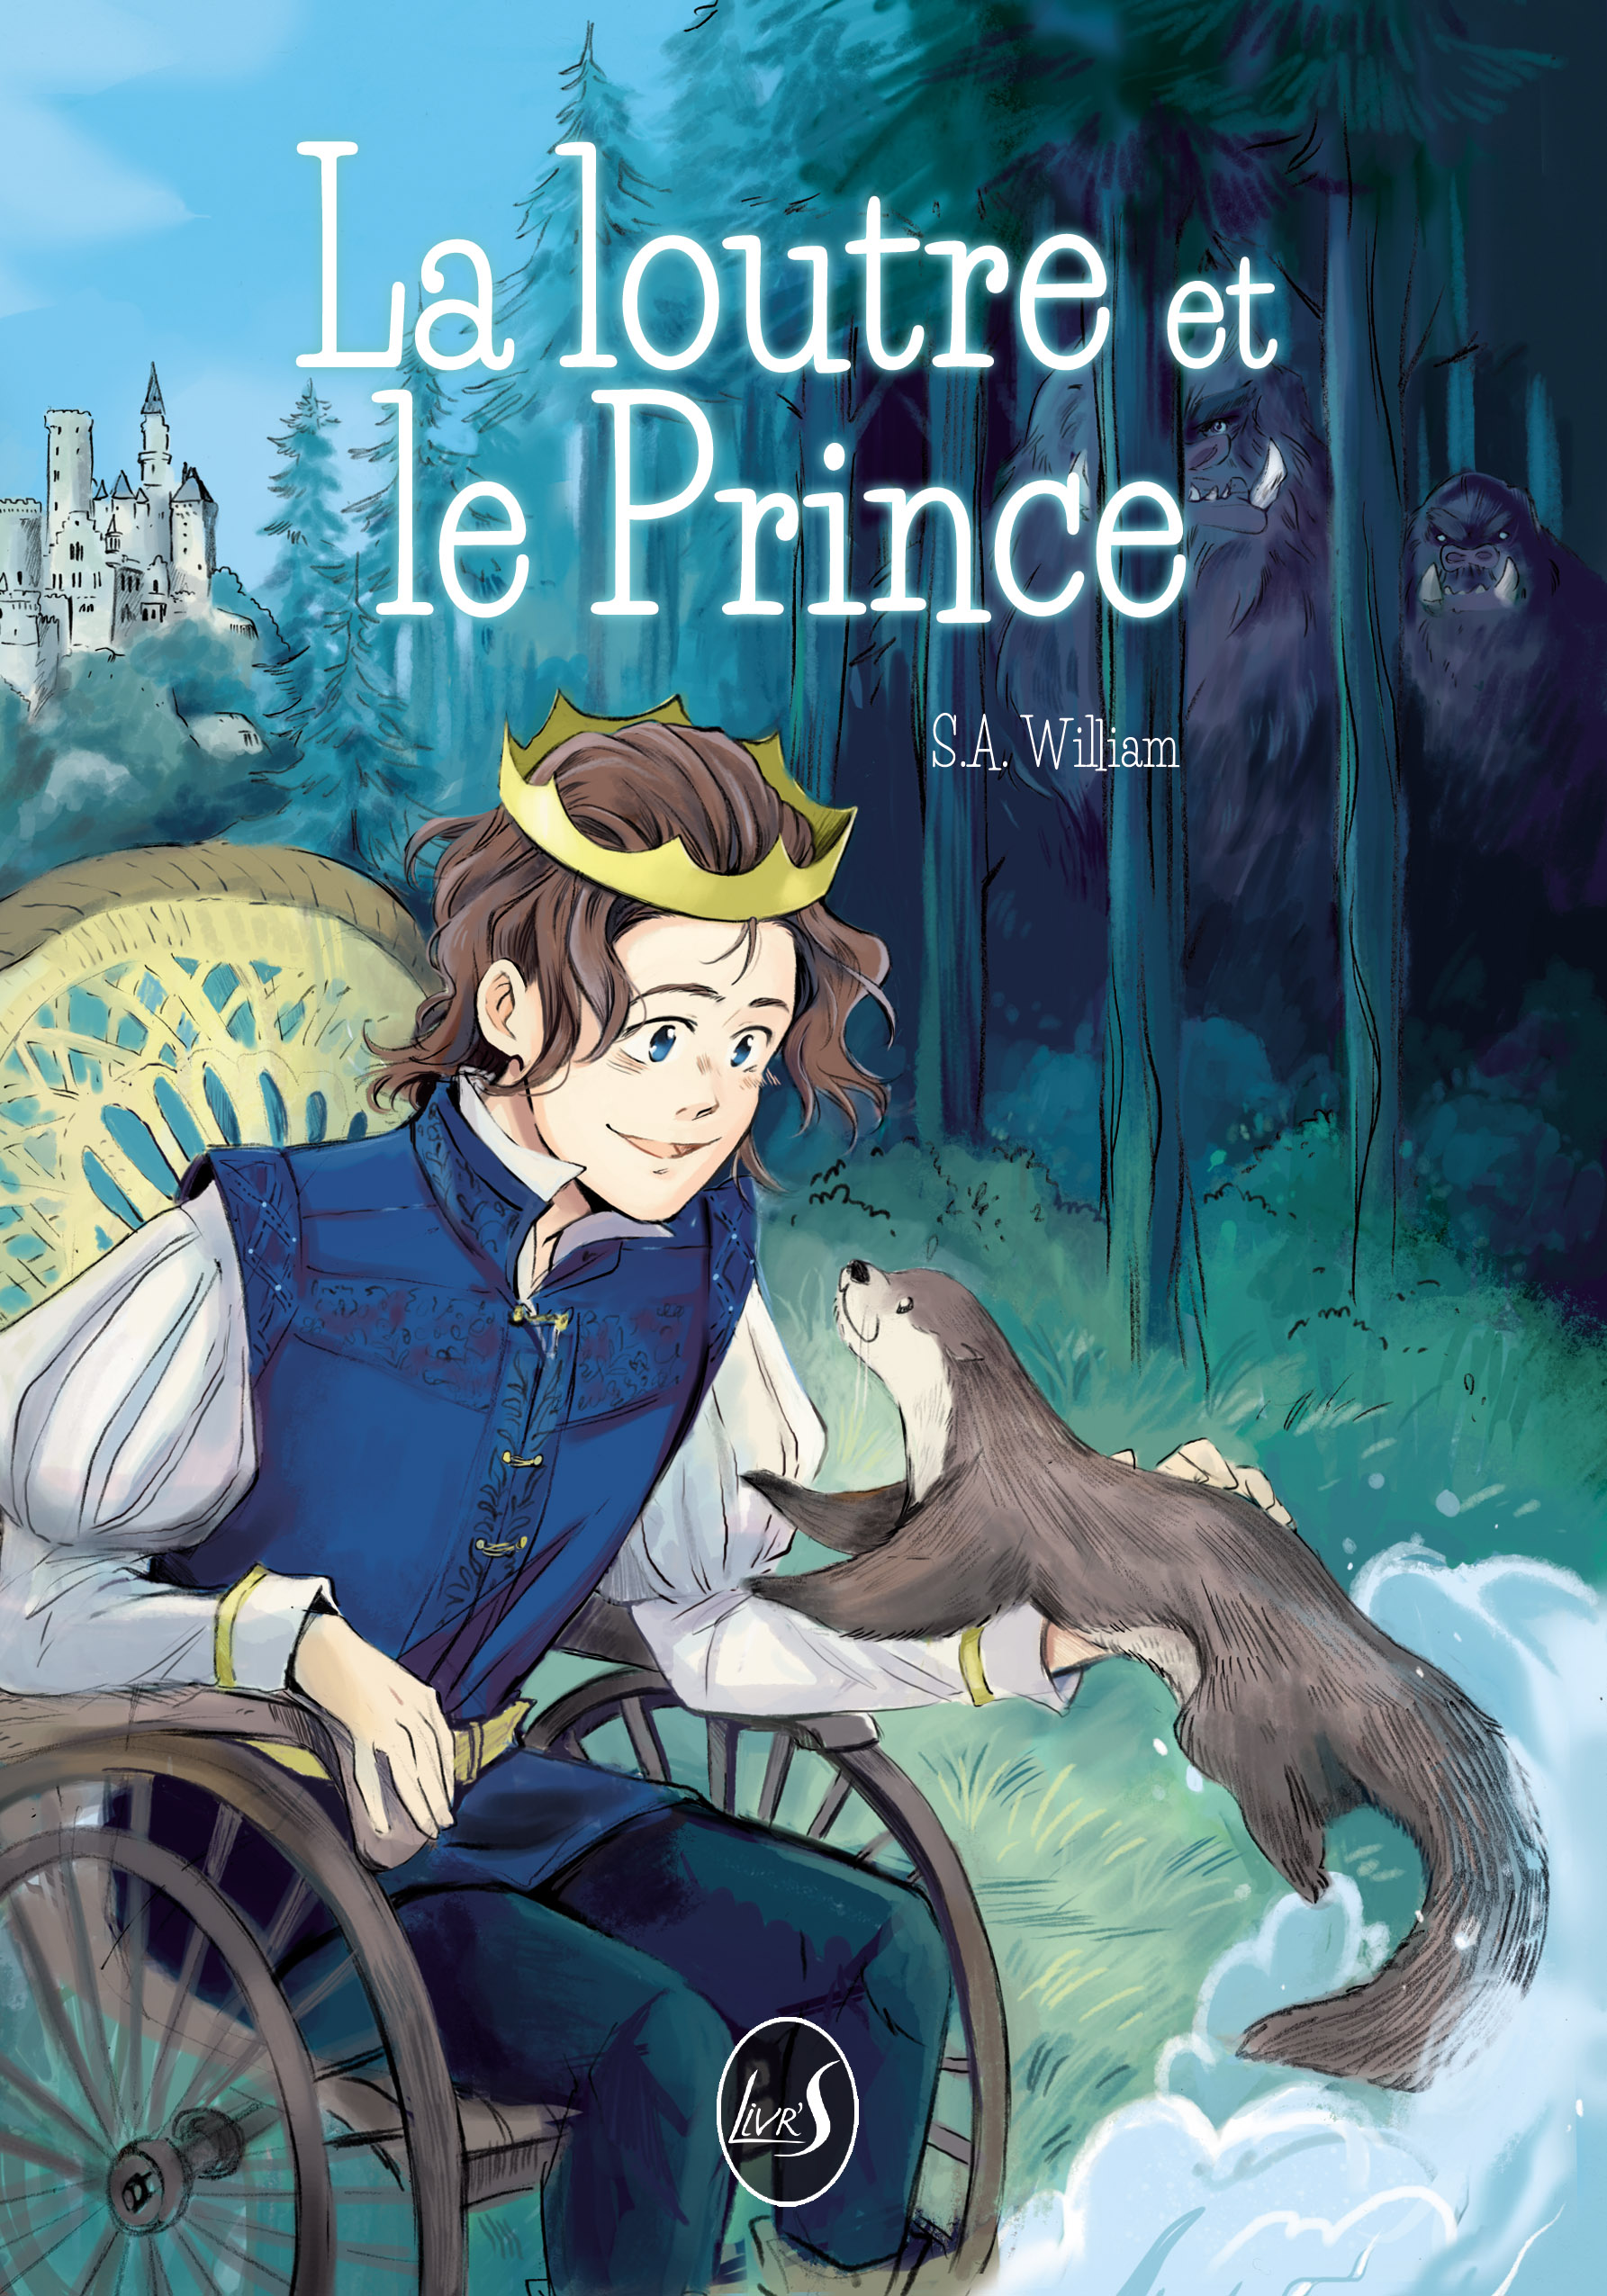 La loutre et le Prince - Livr'S Editions